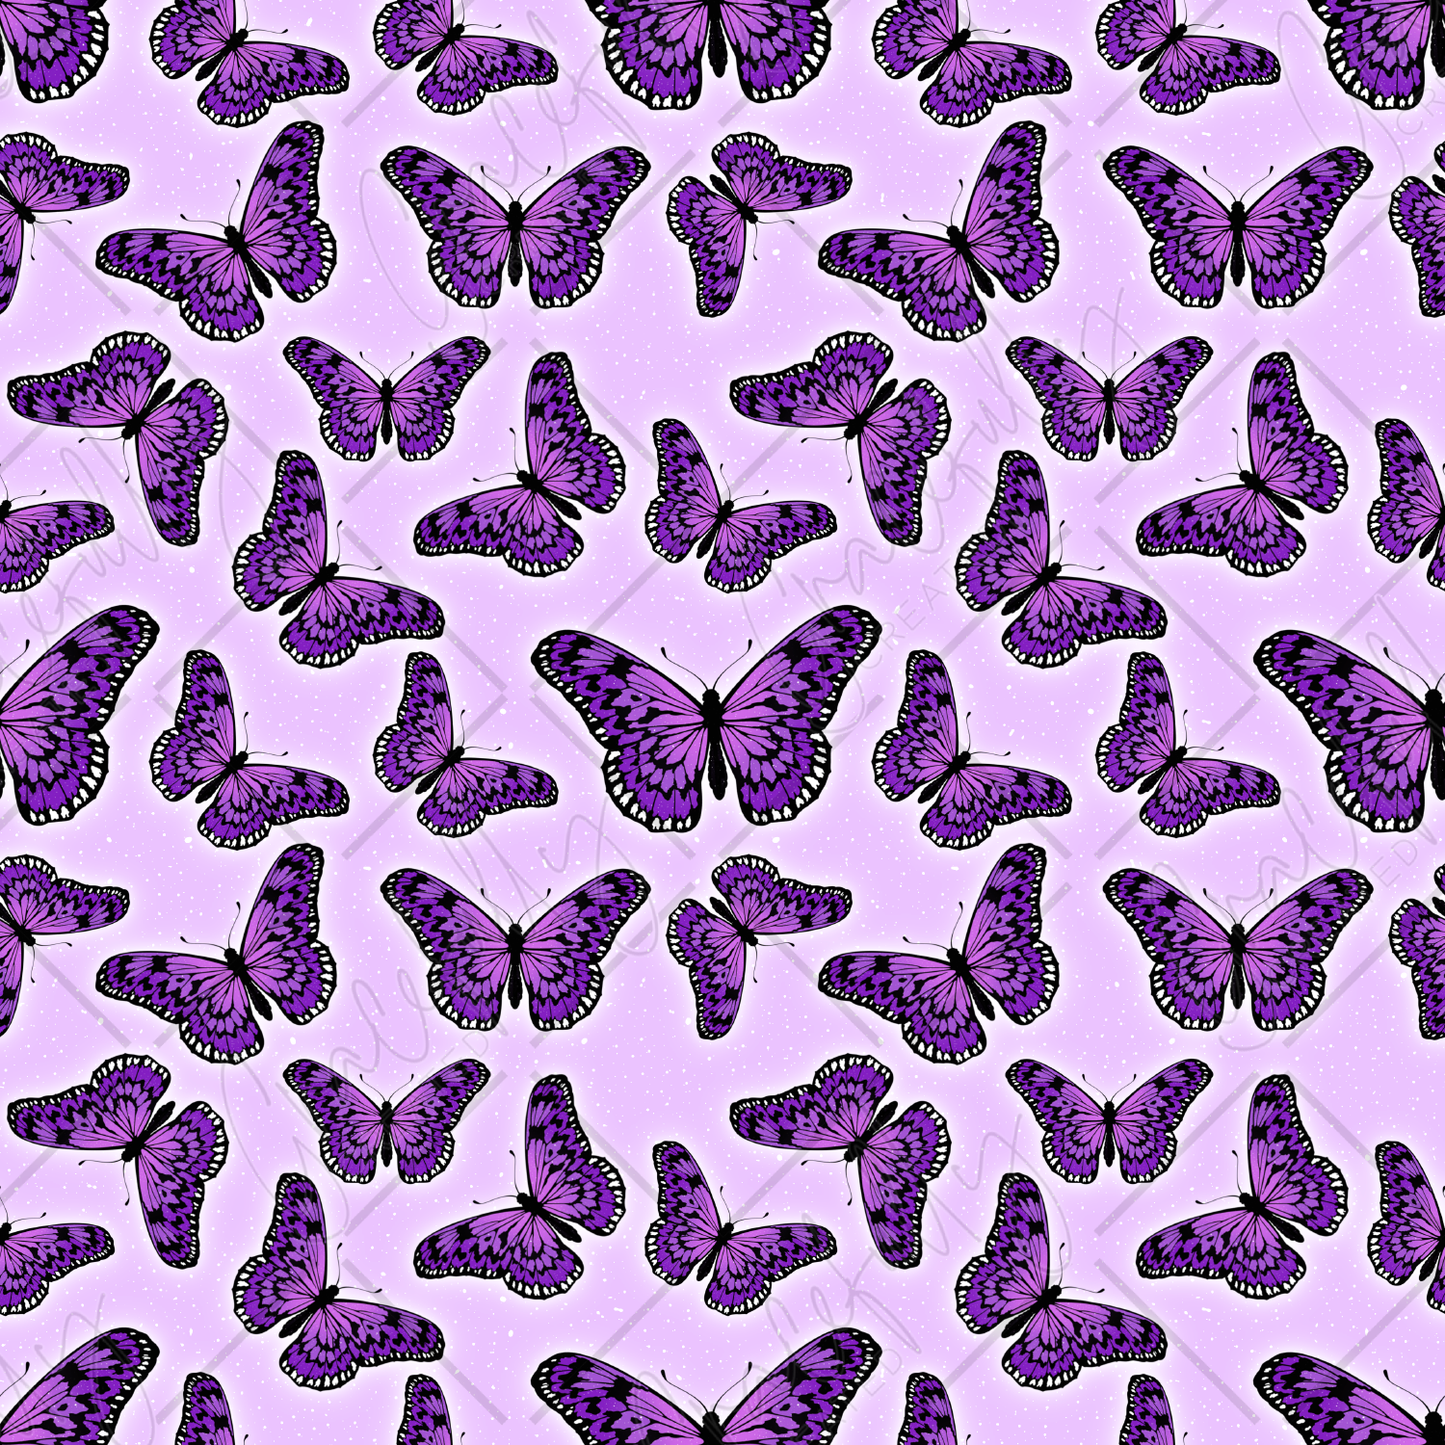 PV139 Seaira's Butterflies